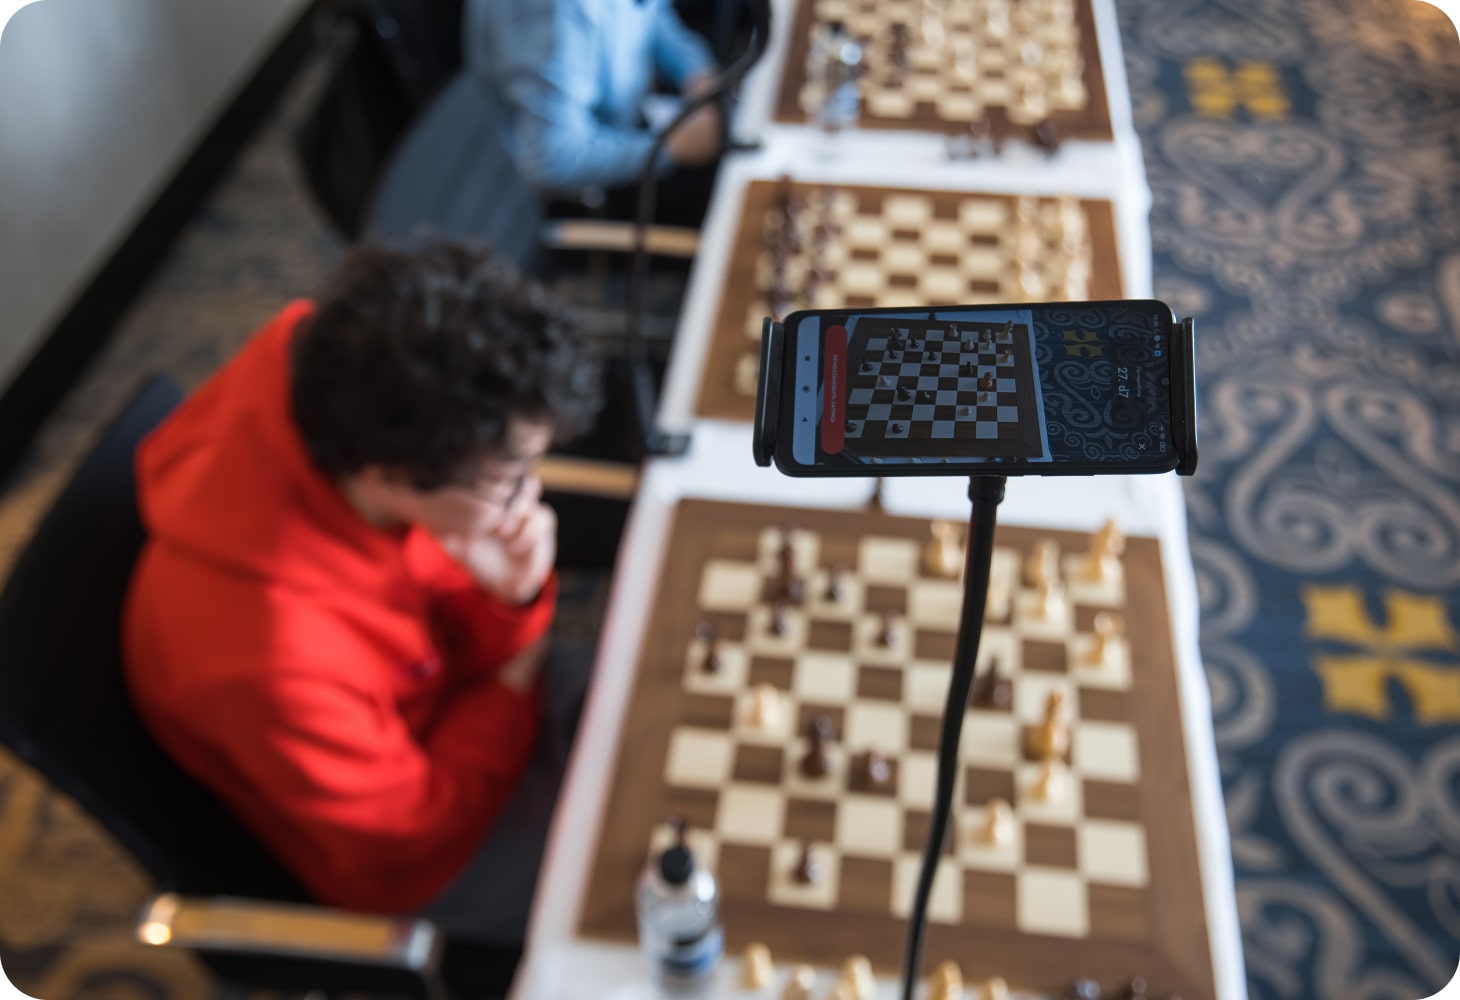 GM Daniil Dubov ladies and gentlemen. #chess #chessvideos #chessmoves  #chessgrandmaster #chessgame